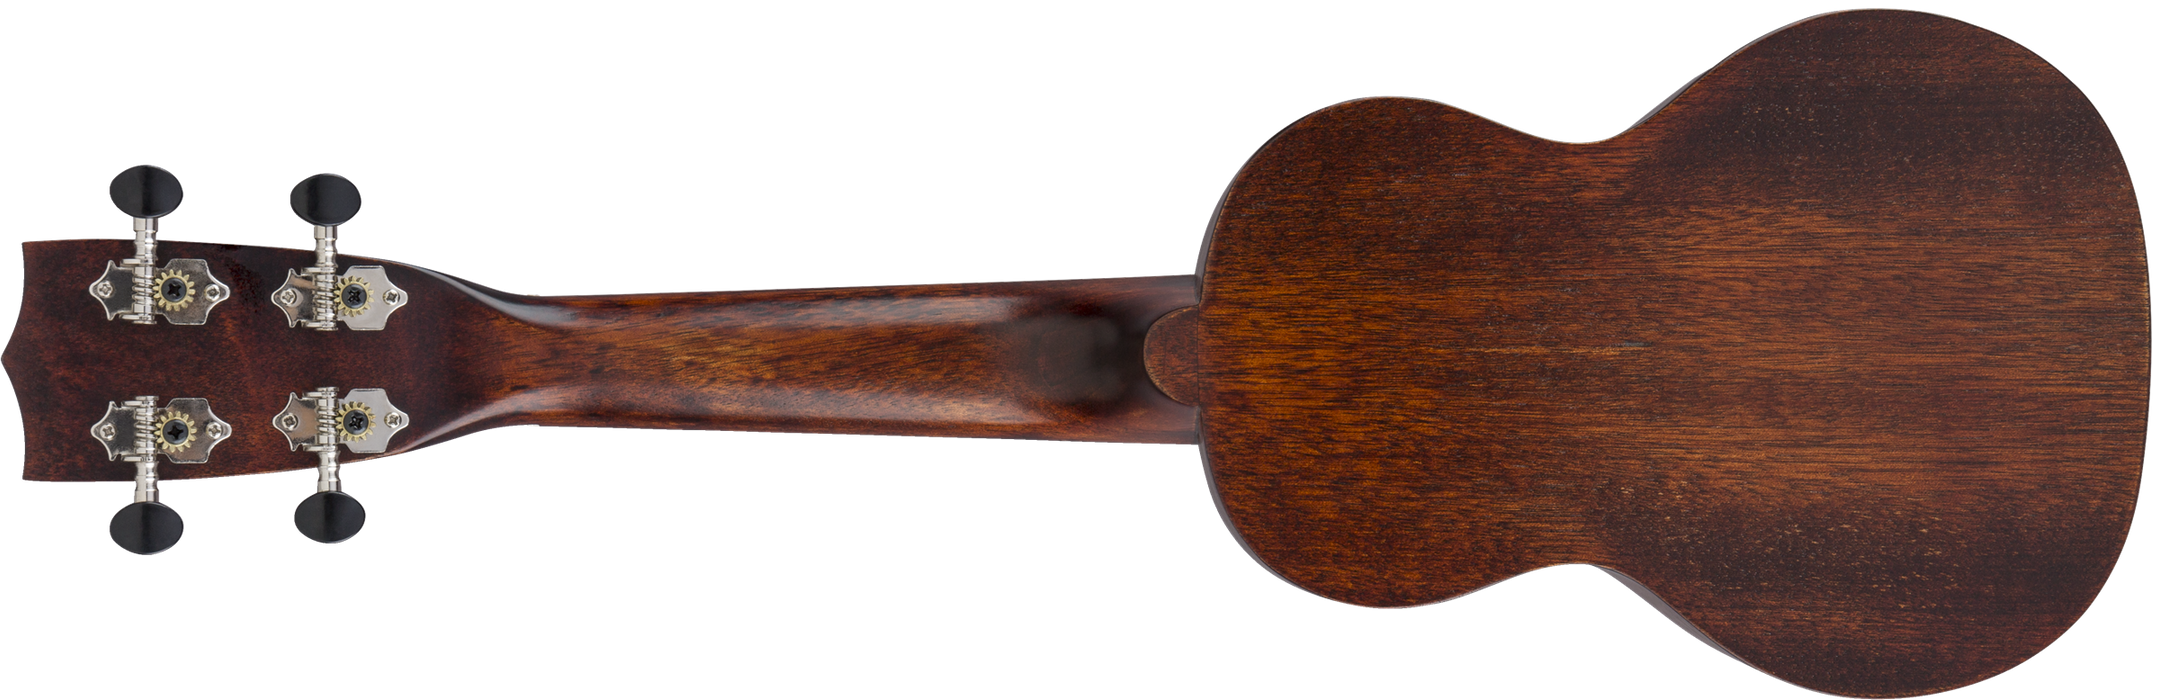 Gretsch G9100 Soprano Standard Ukulele - Vintage Mahogany Stain